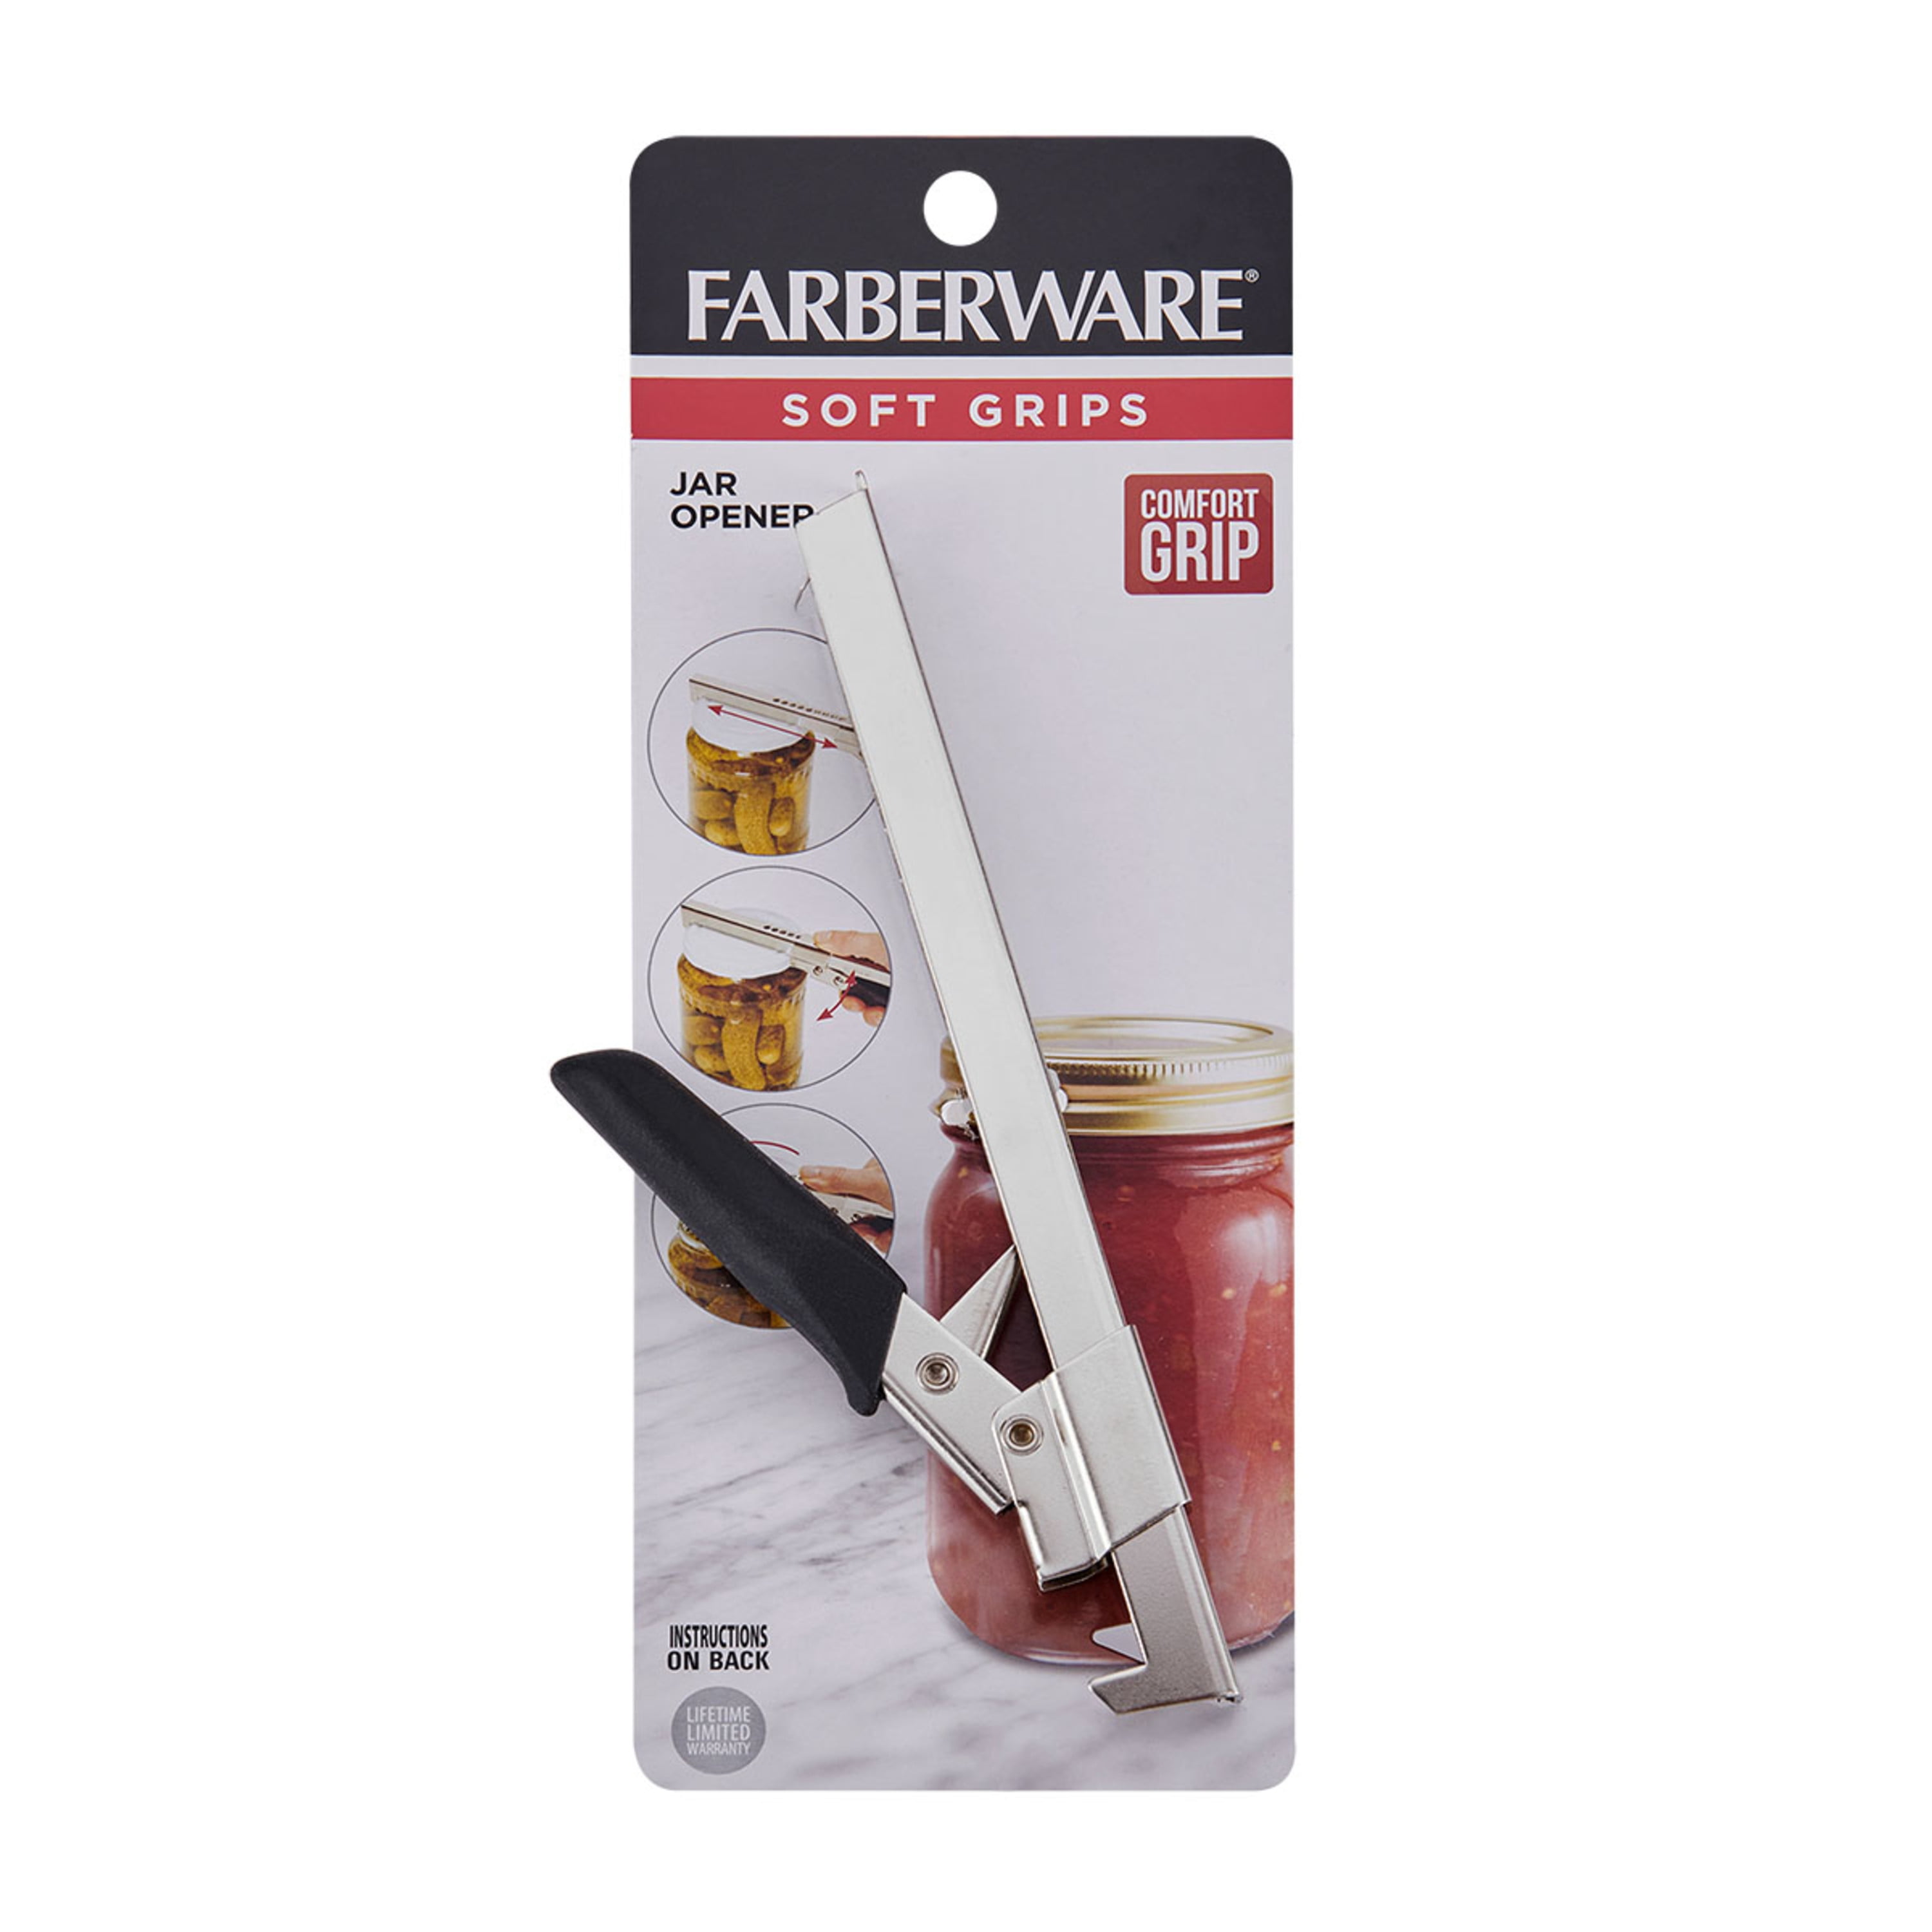 Farberware Soft Grips Jar Opener 